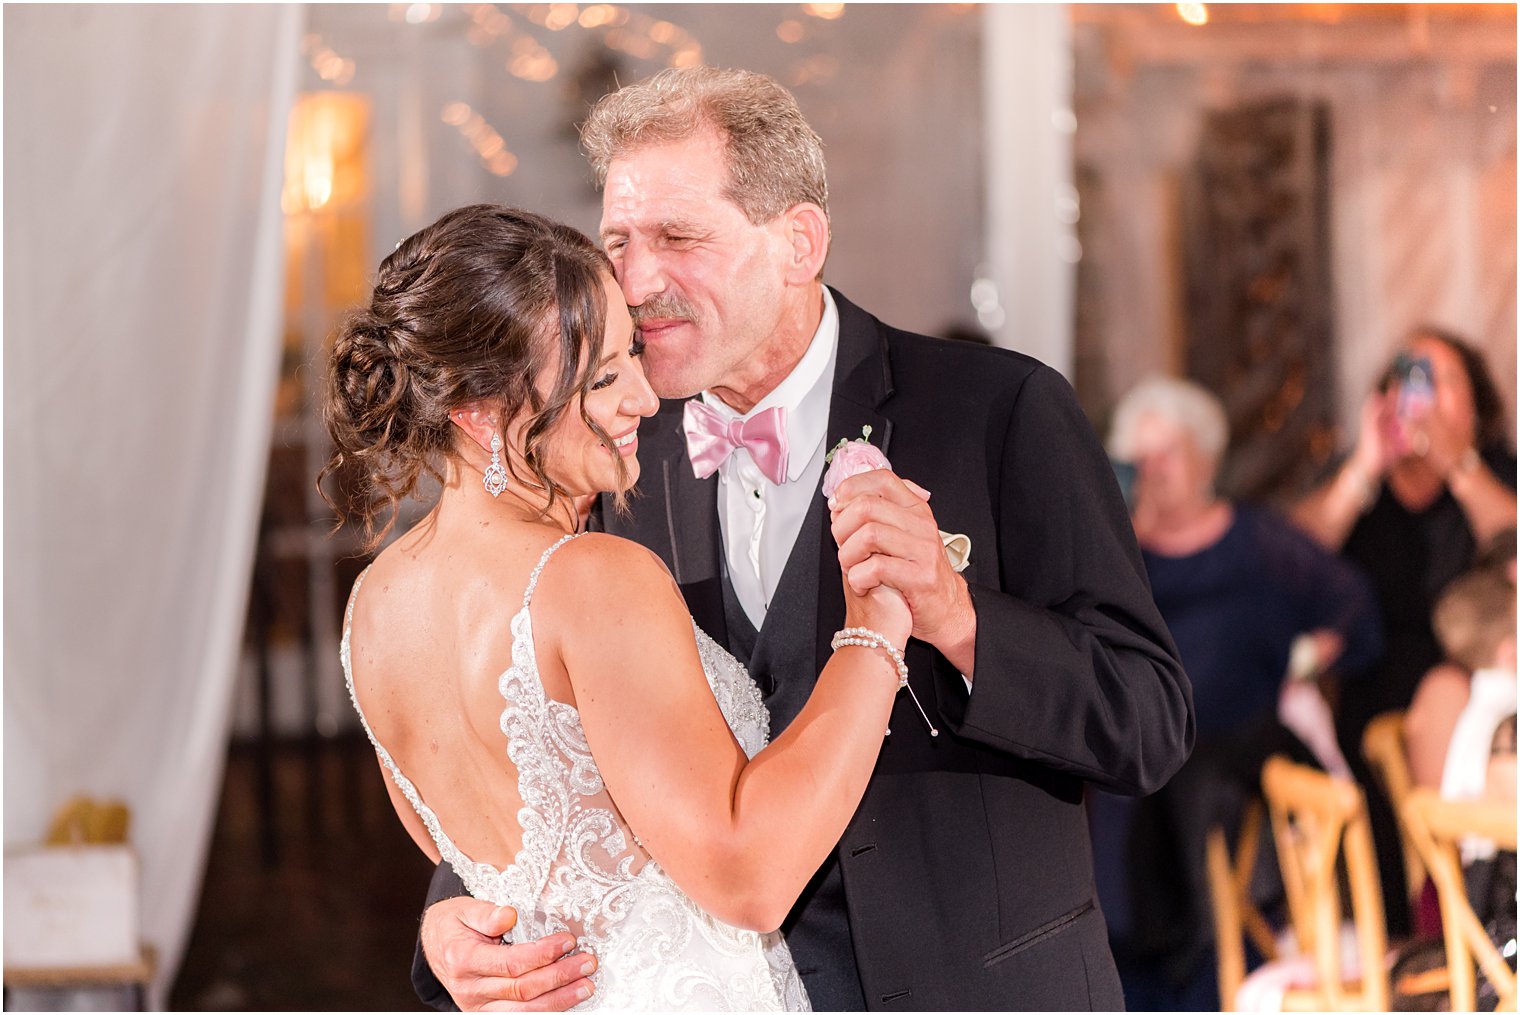 dad hugs bride during dance at NJ wedding reception 